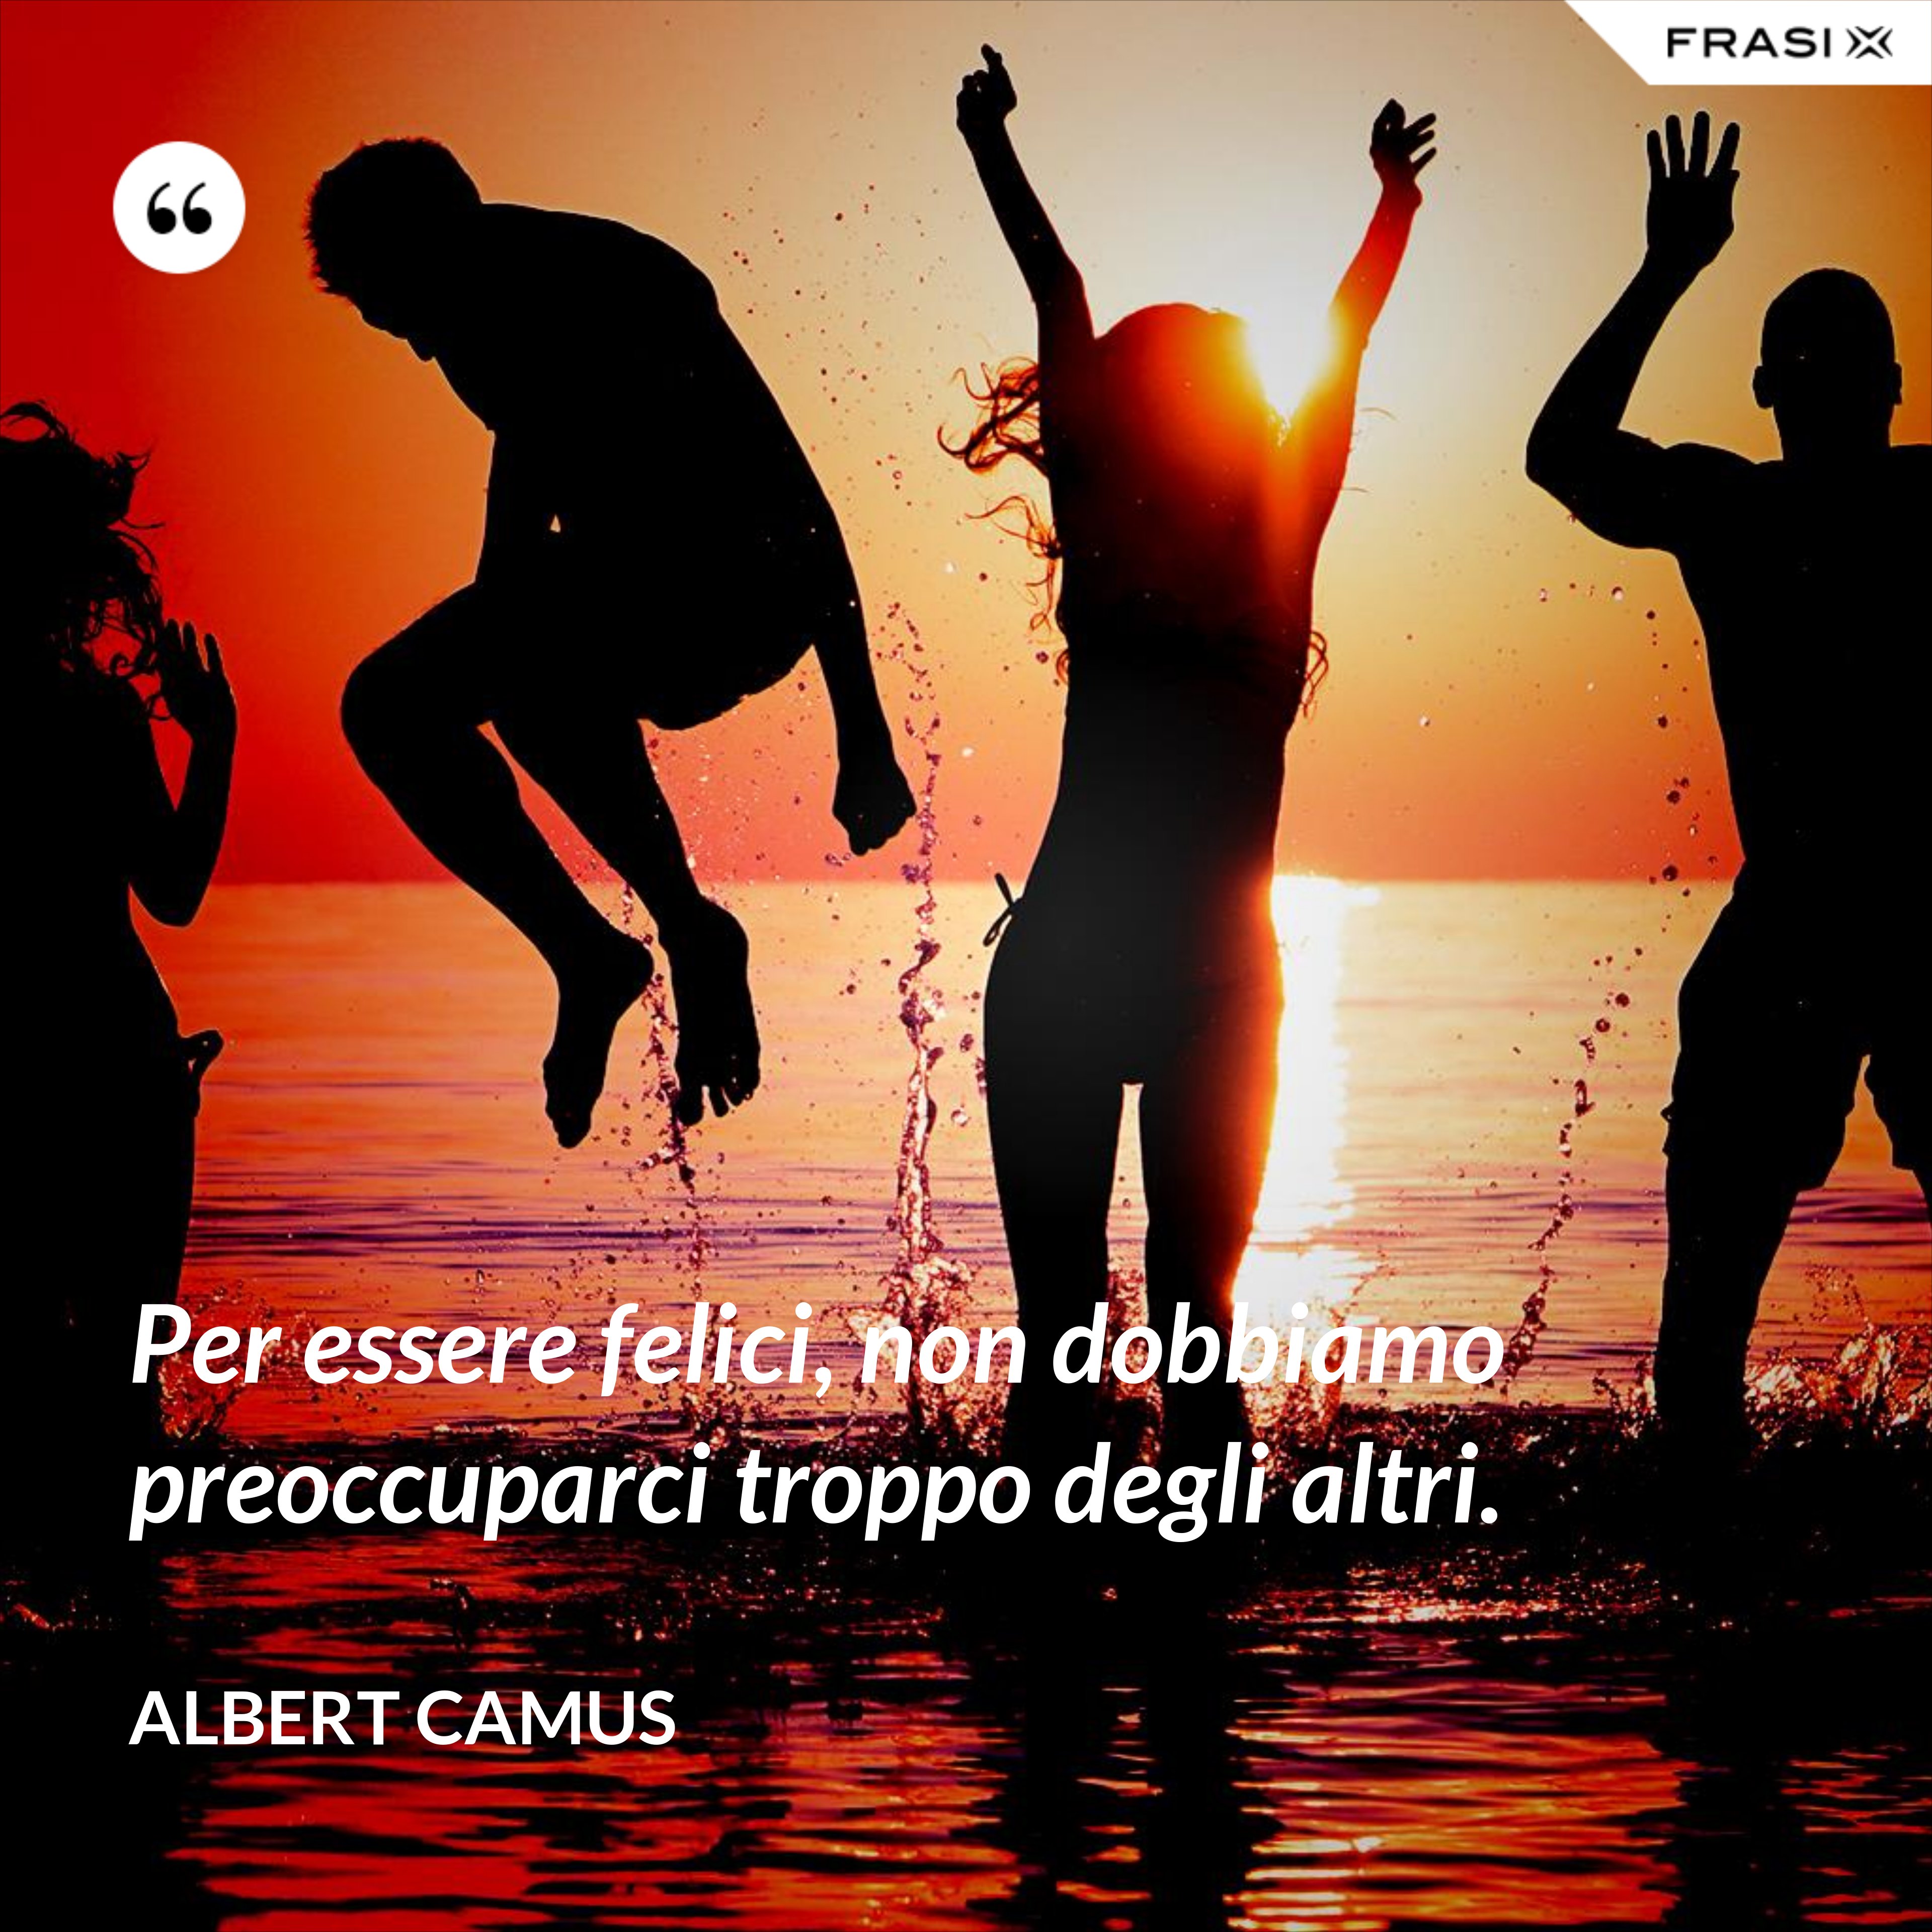 Per essere felici, non dobbiamo preoccuparci troppo degli altri. - Albert Camus